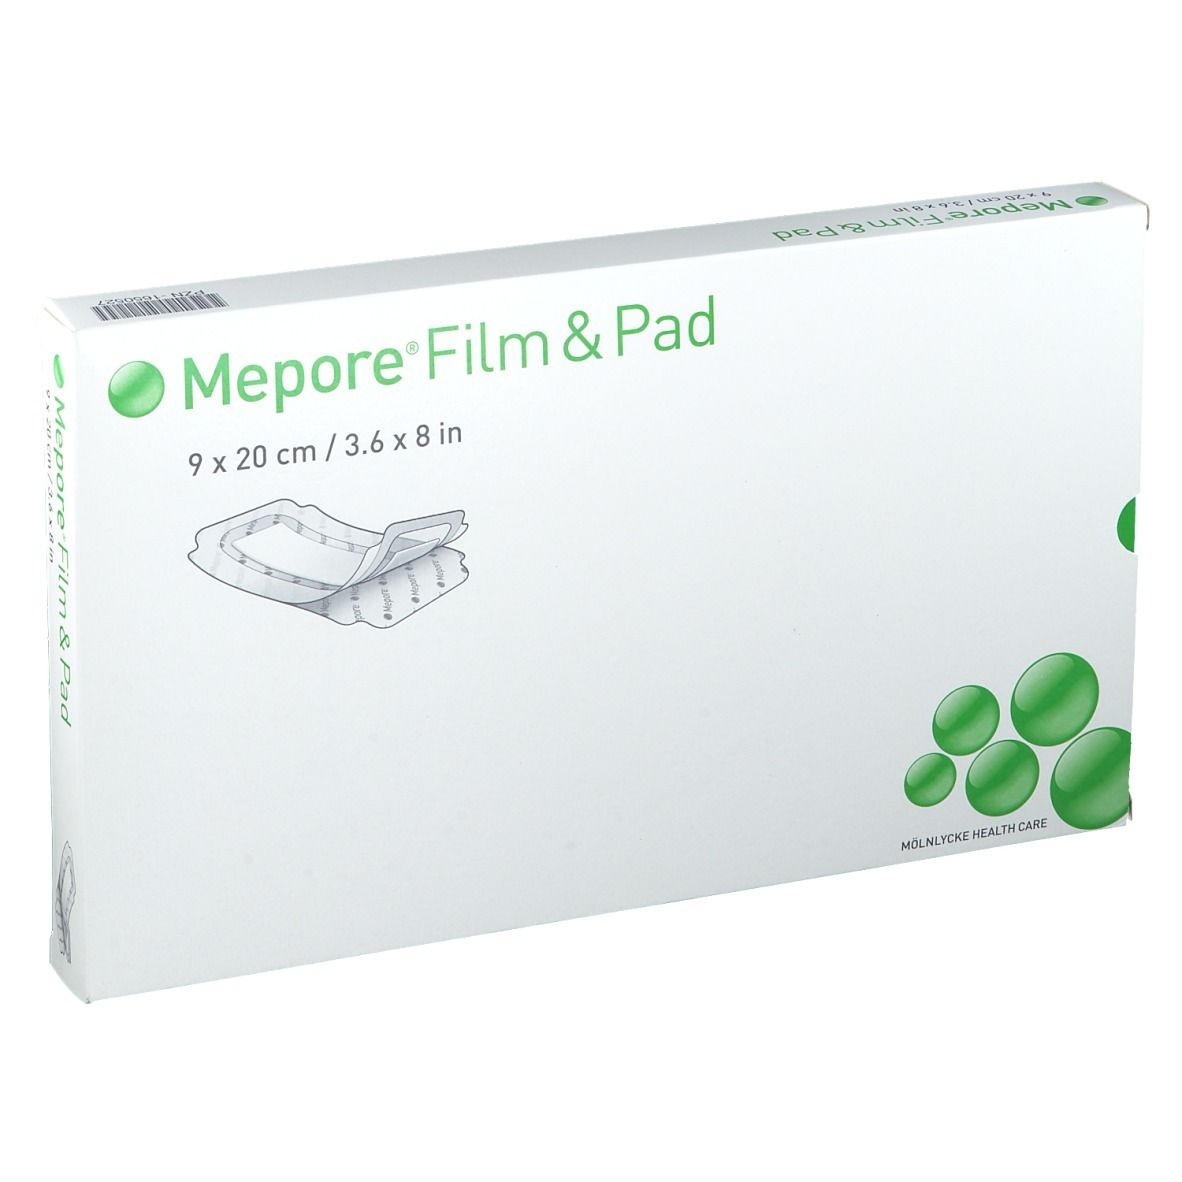 Mepore® Film & Pad 9 x 20 cm